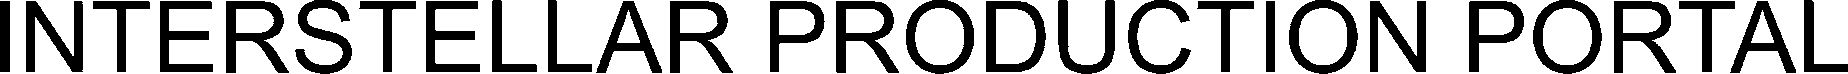 Trademark Logo INTERSTELLAR PRODUCTION PORTAL